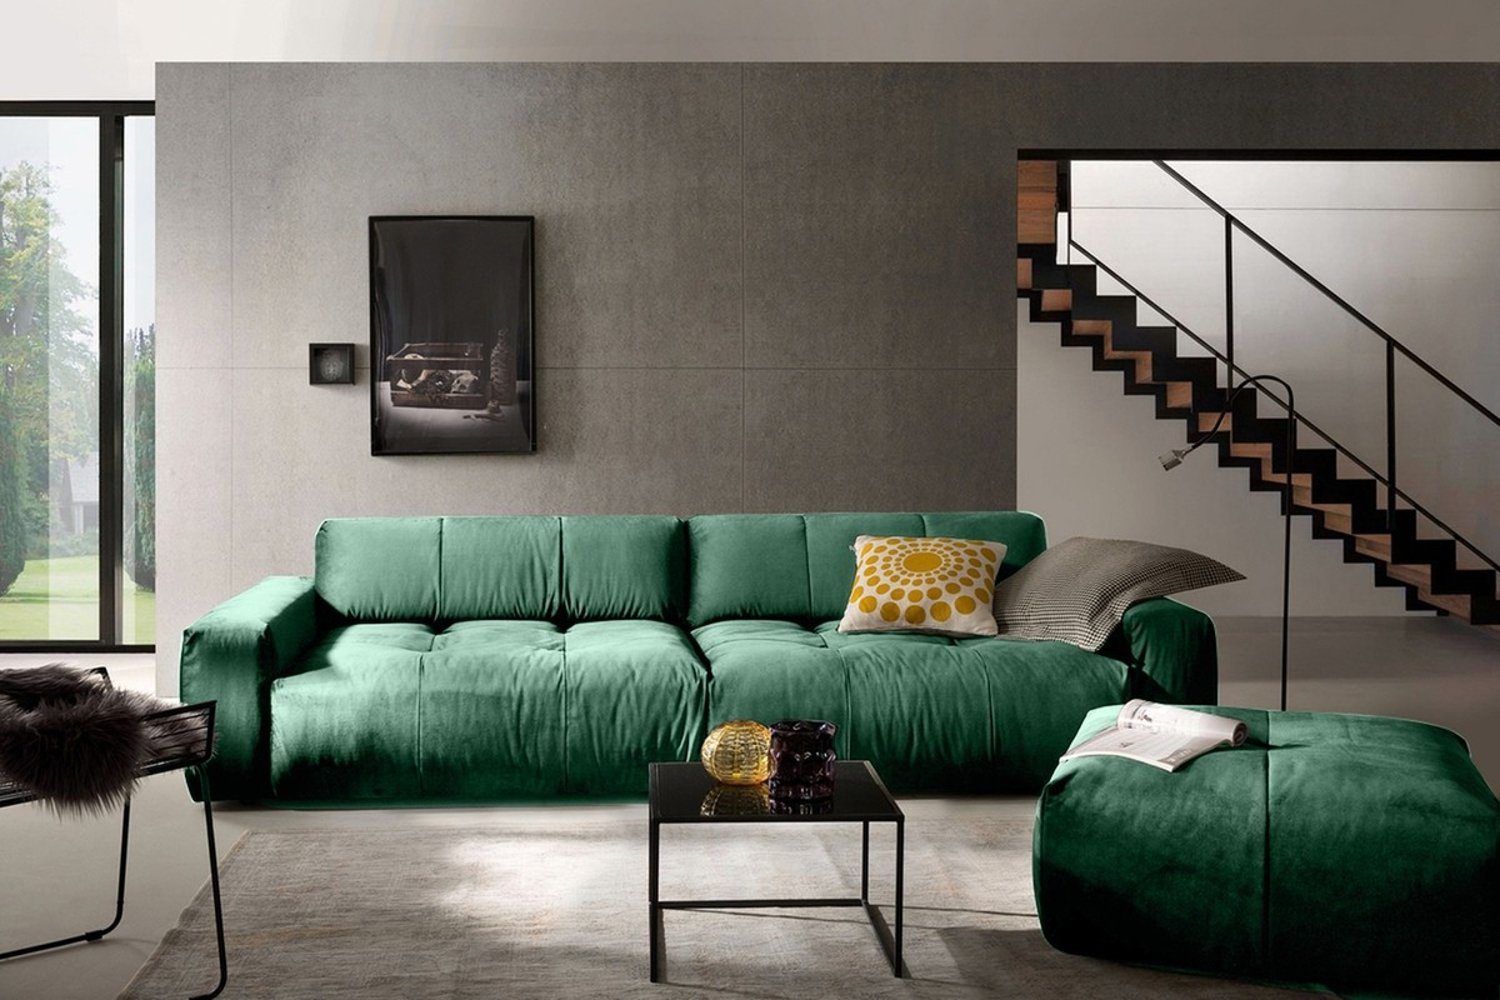 KAWOLA 3-Sitzer PALACE, Big Sofa Sitztiefenverstellung mit Farben smaragd versch. Velvet